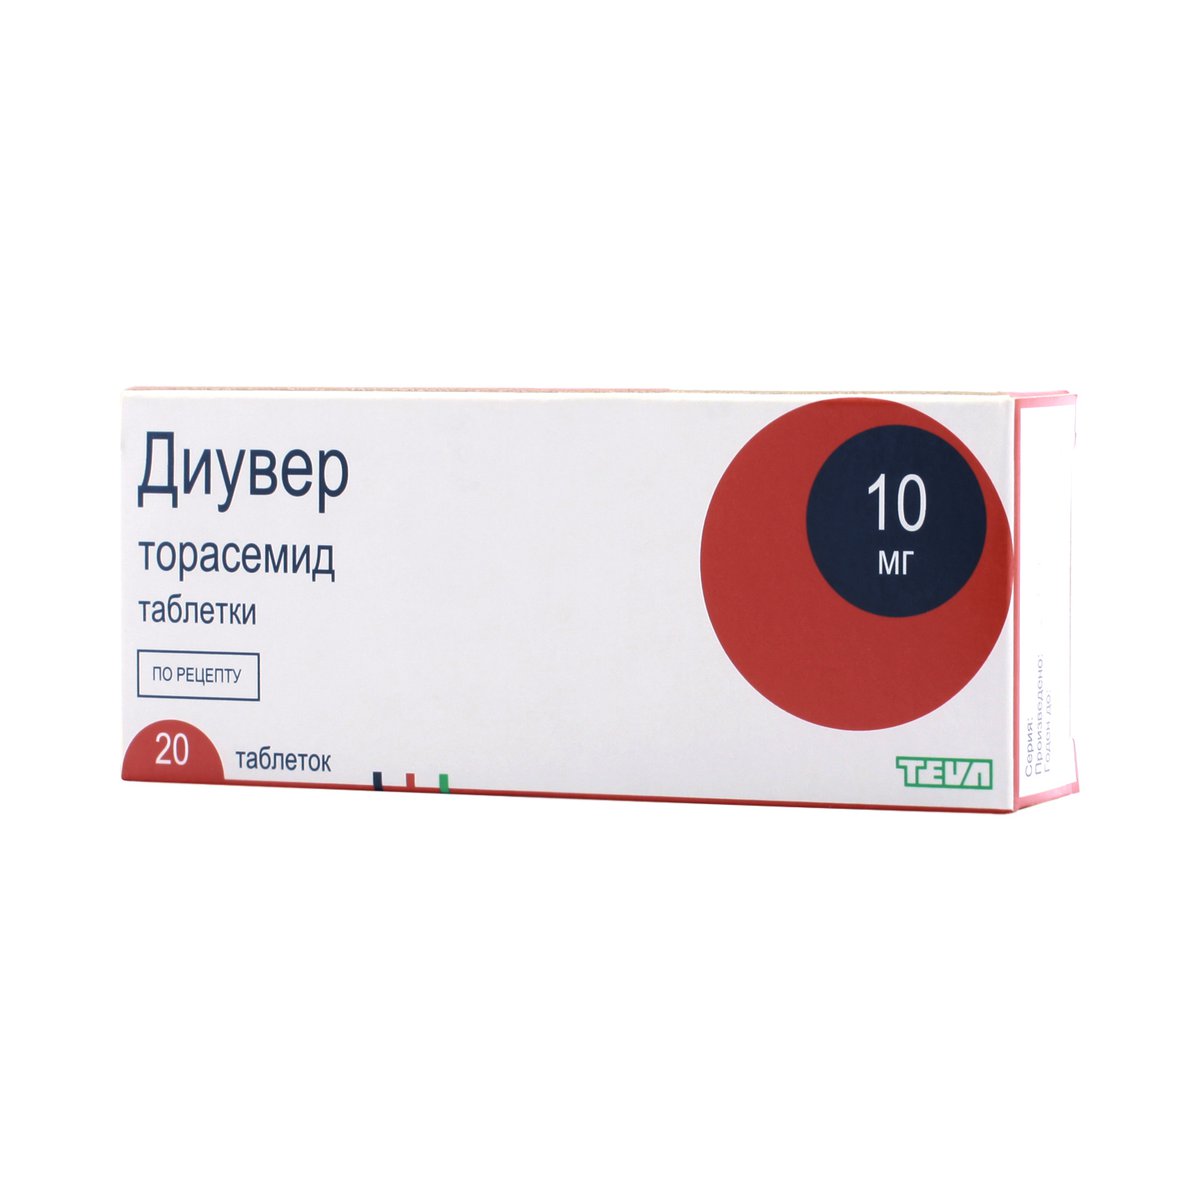 Диувер (таблетки, 20 шт, 10 мг) - цена,  онлайн  .